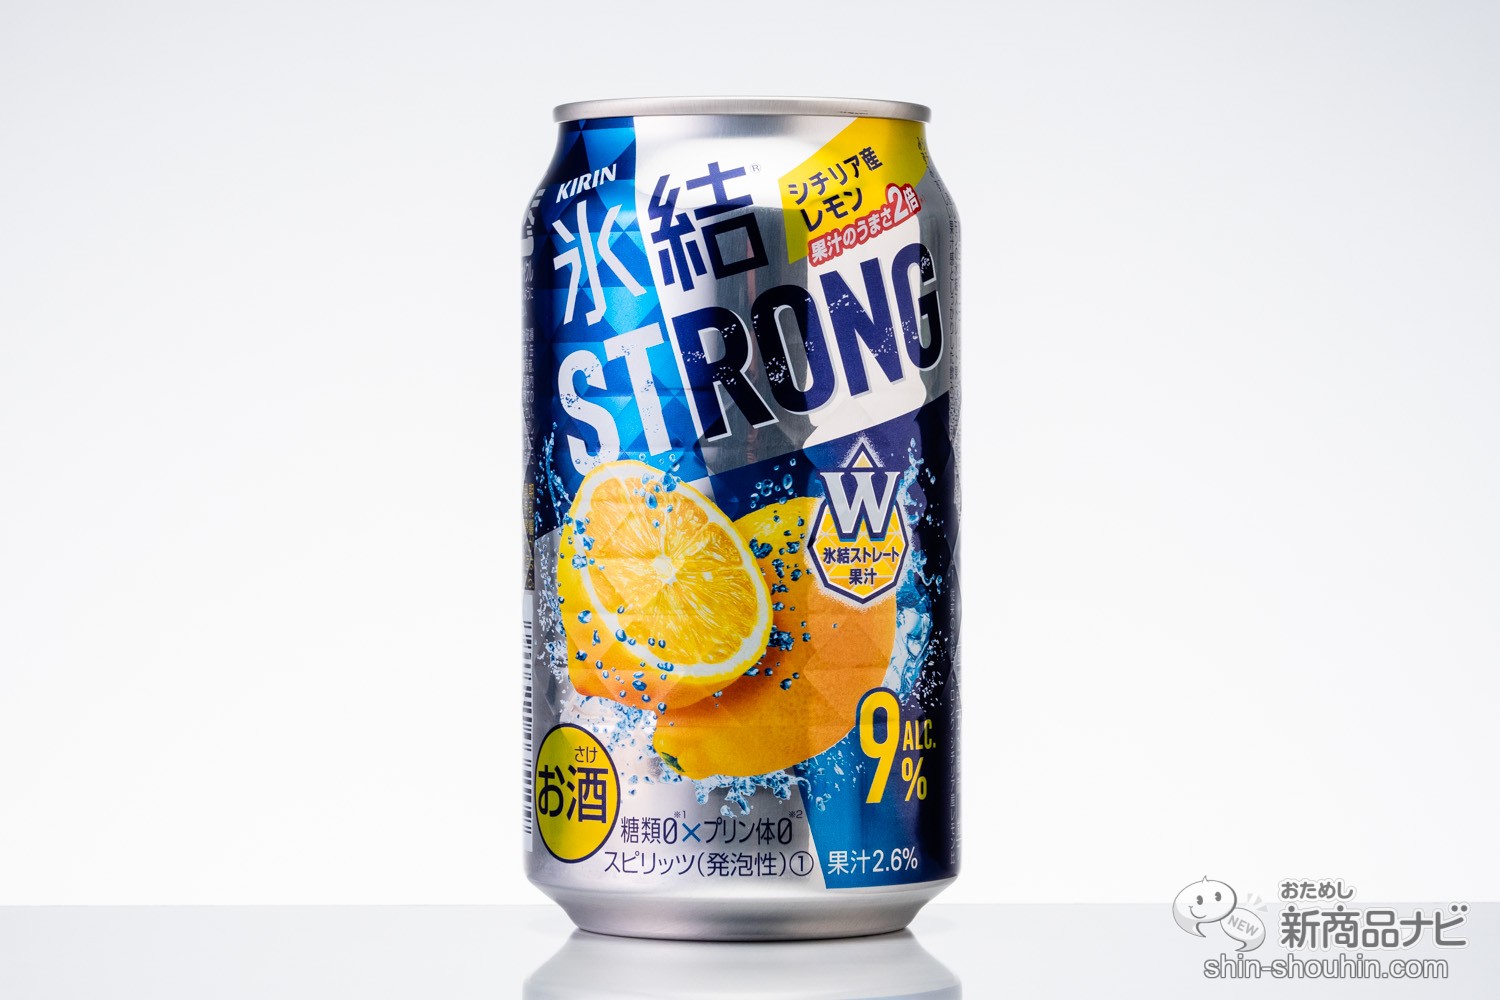 おためし新商品ナビ » Blog Archive » 【ストロング系】『キリン 氷結ストロング』レモン味、その微妙な差を比較！【缶チューハイ】